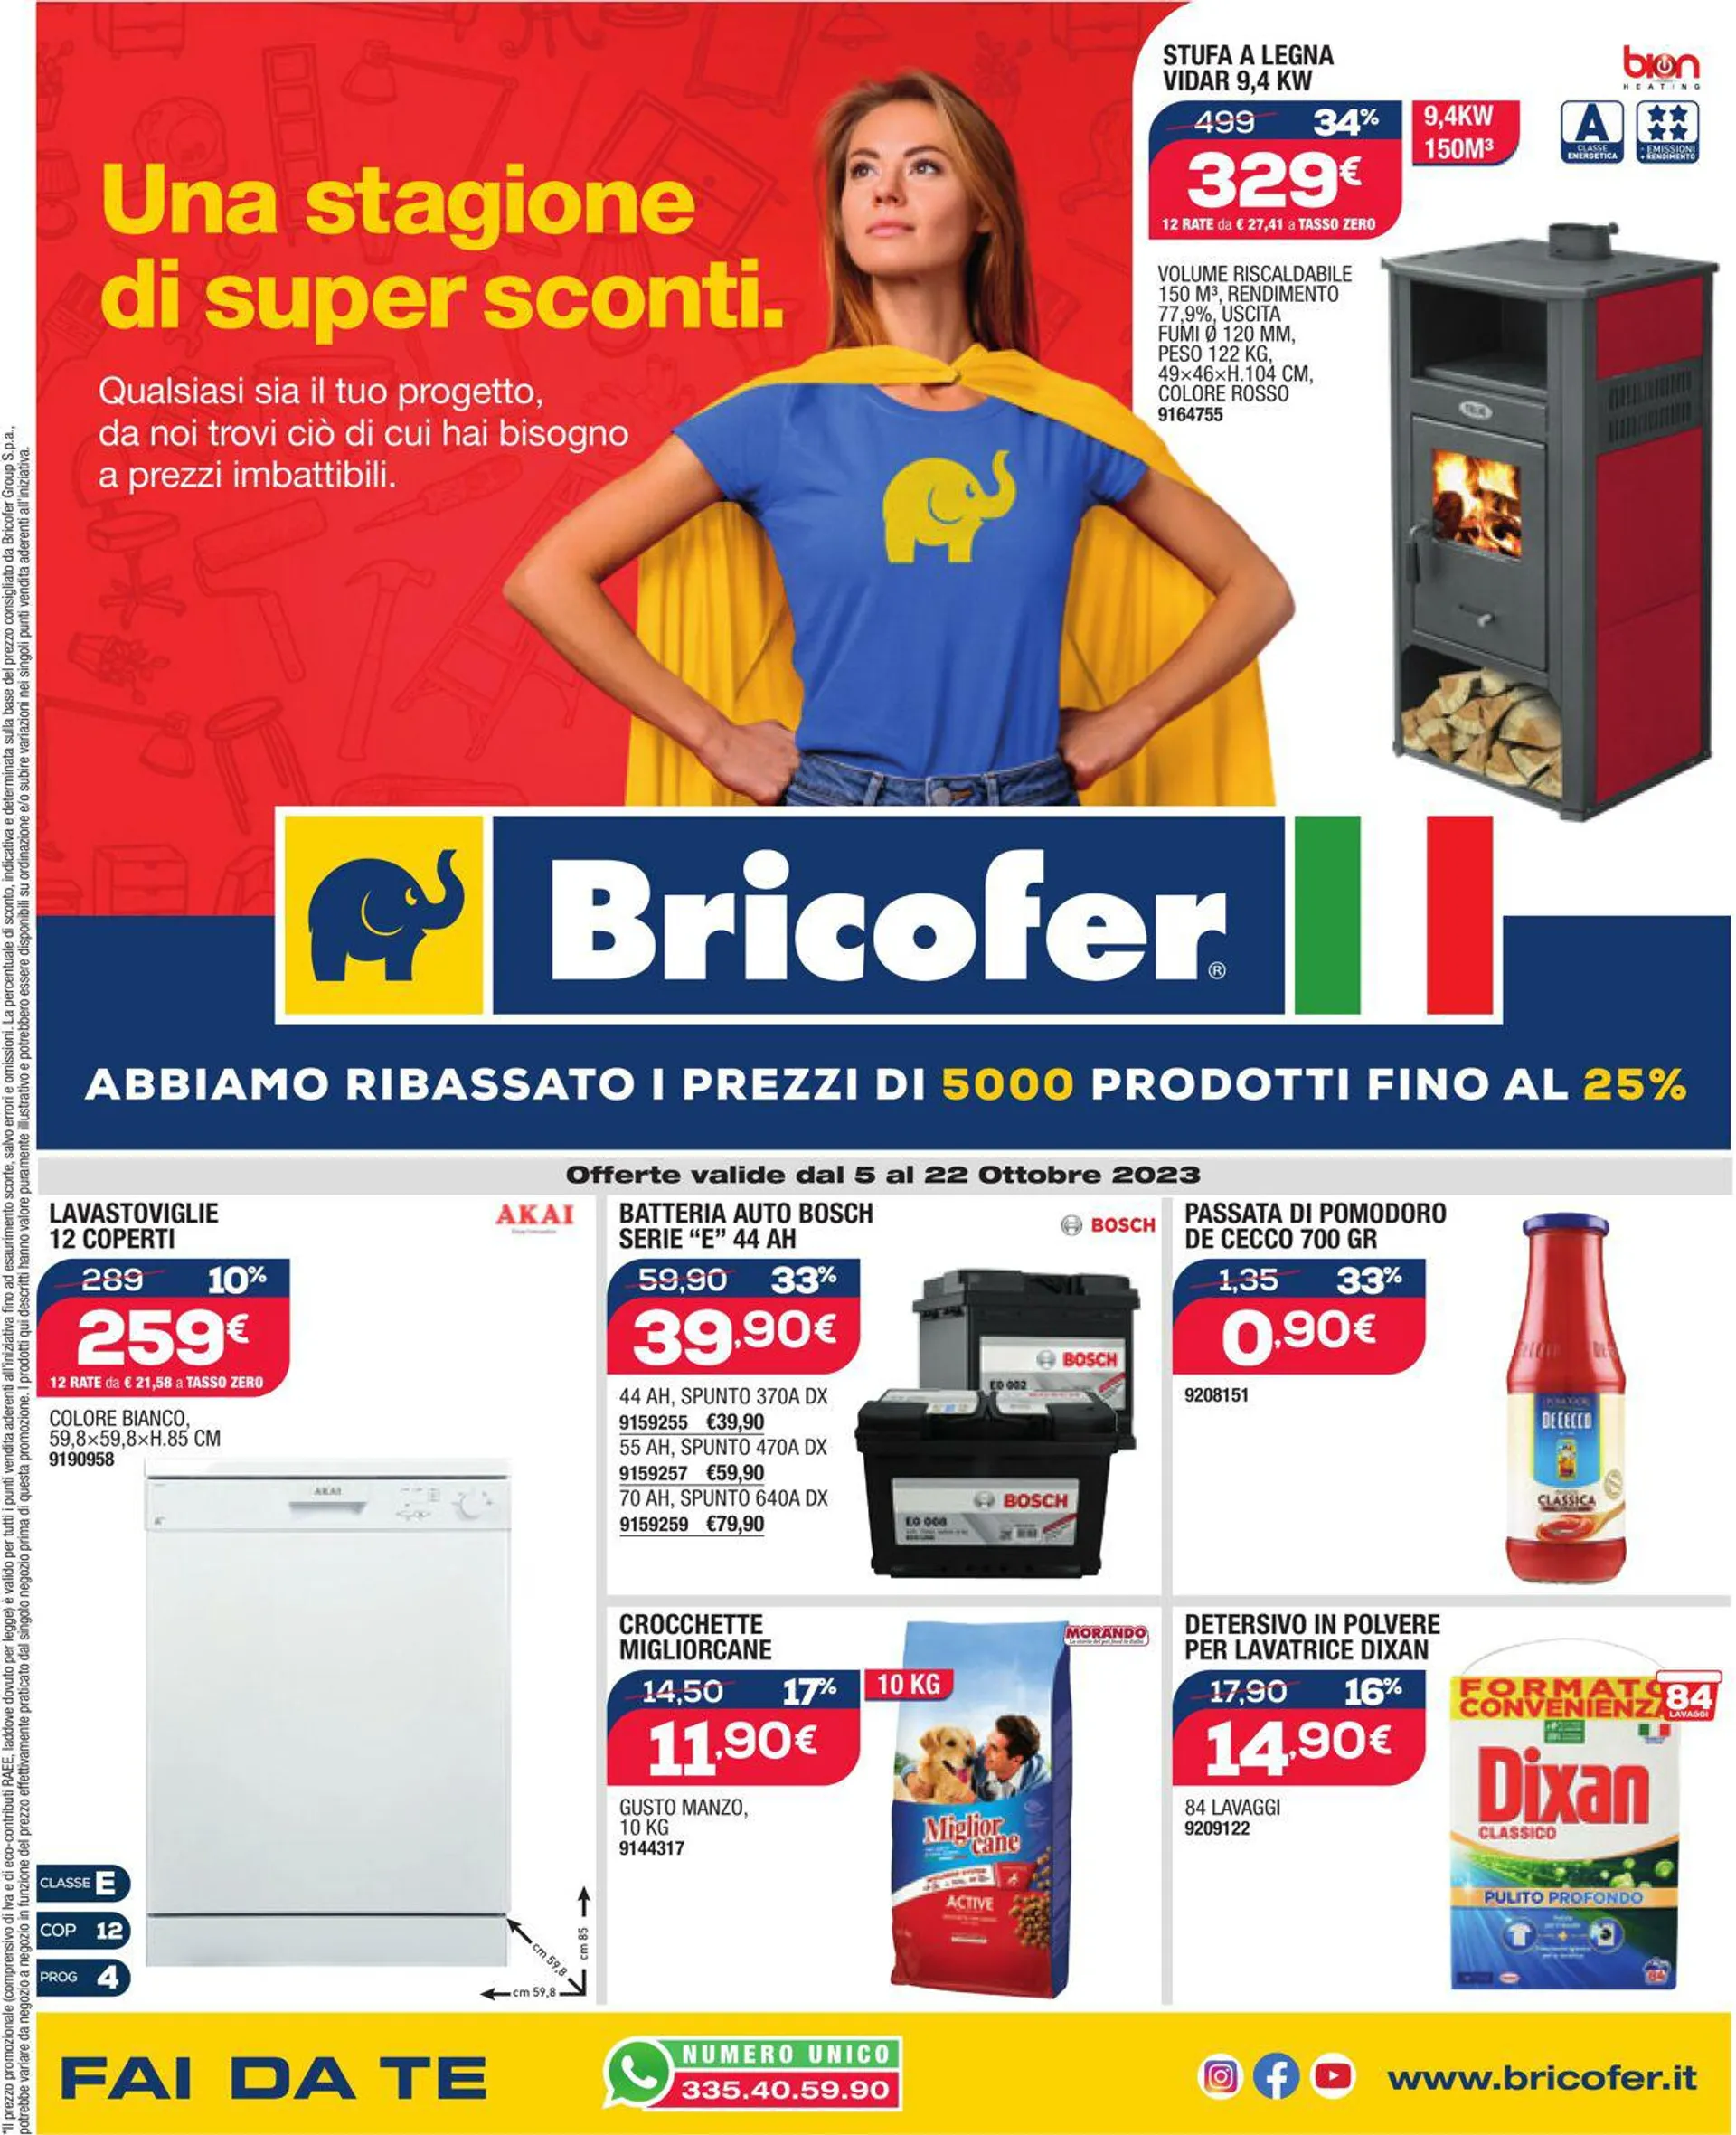 Bricofer - Perugia Volantino attuale